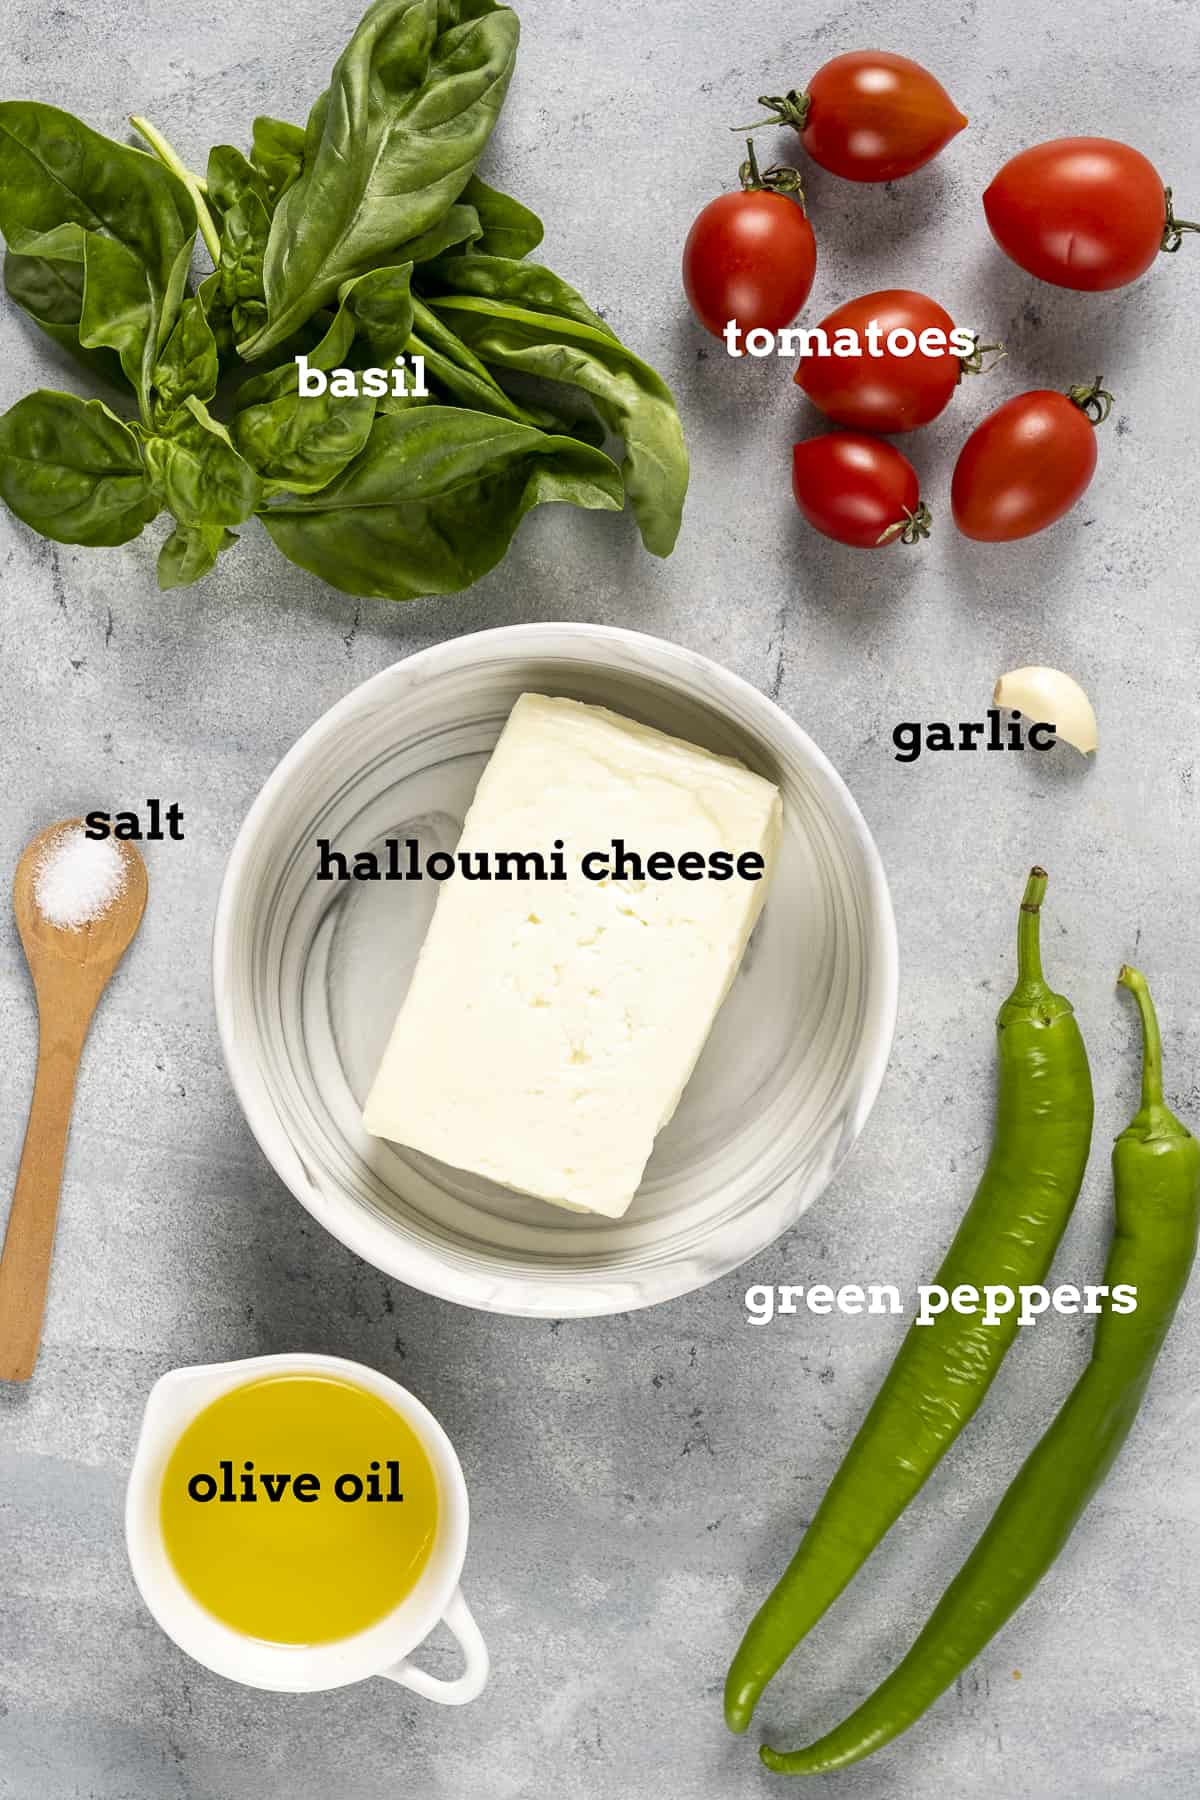 一块哈洛米奶酪、橄榄油、青椒、圣女果、罗勒和大蒜放在灰色的背景上。